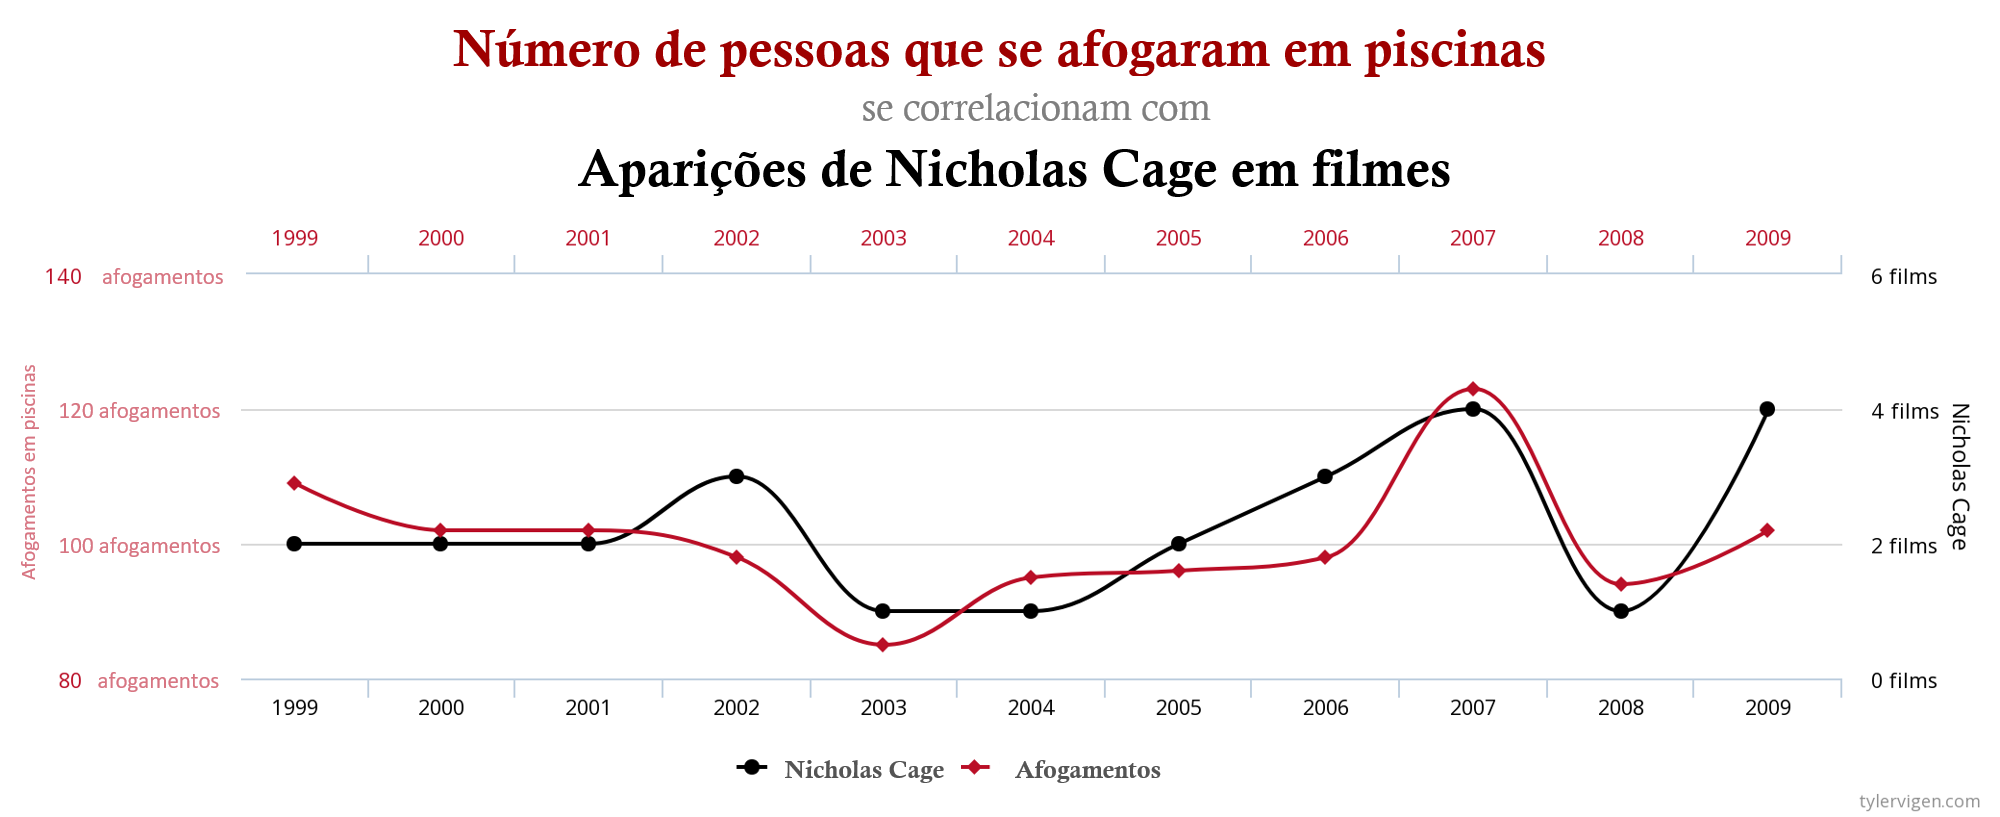 Afogamentos e aparições do Nicholas Cage